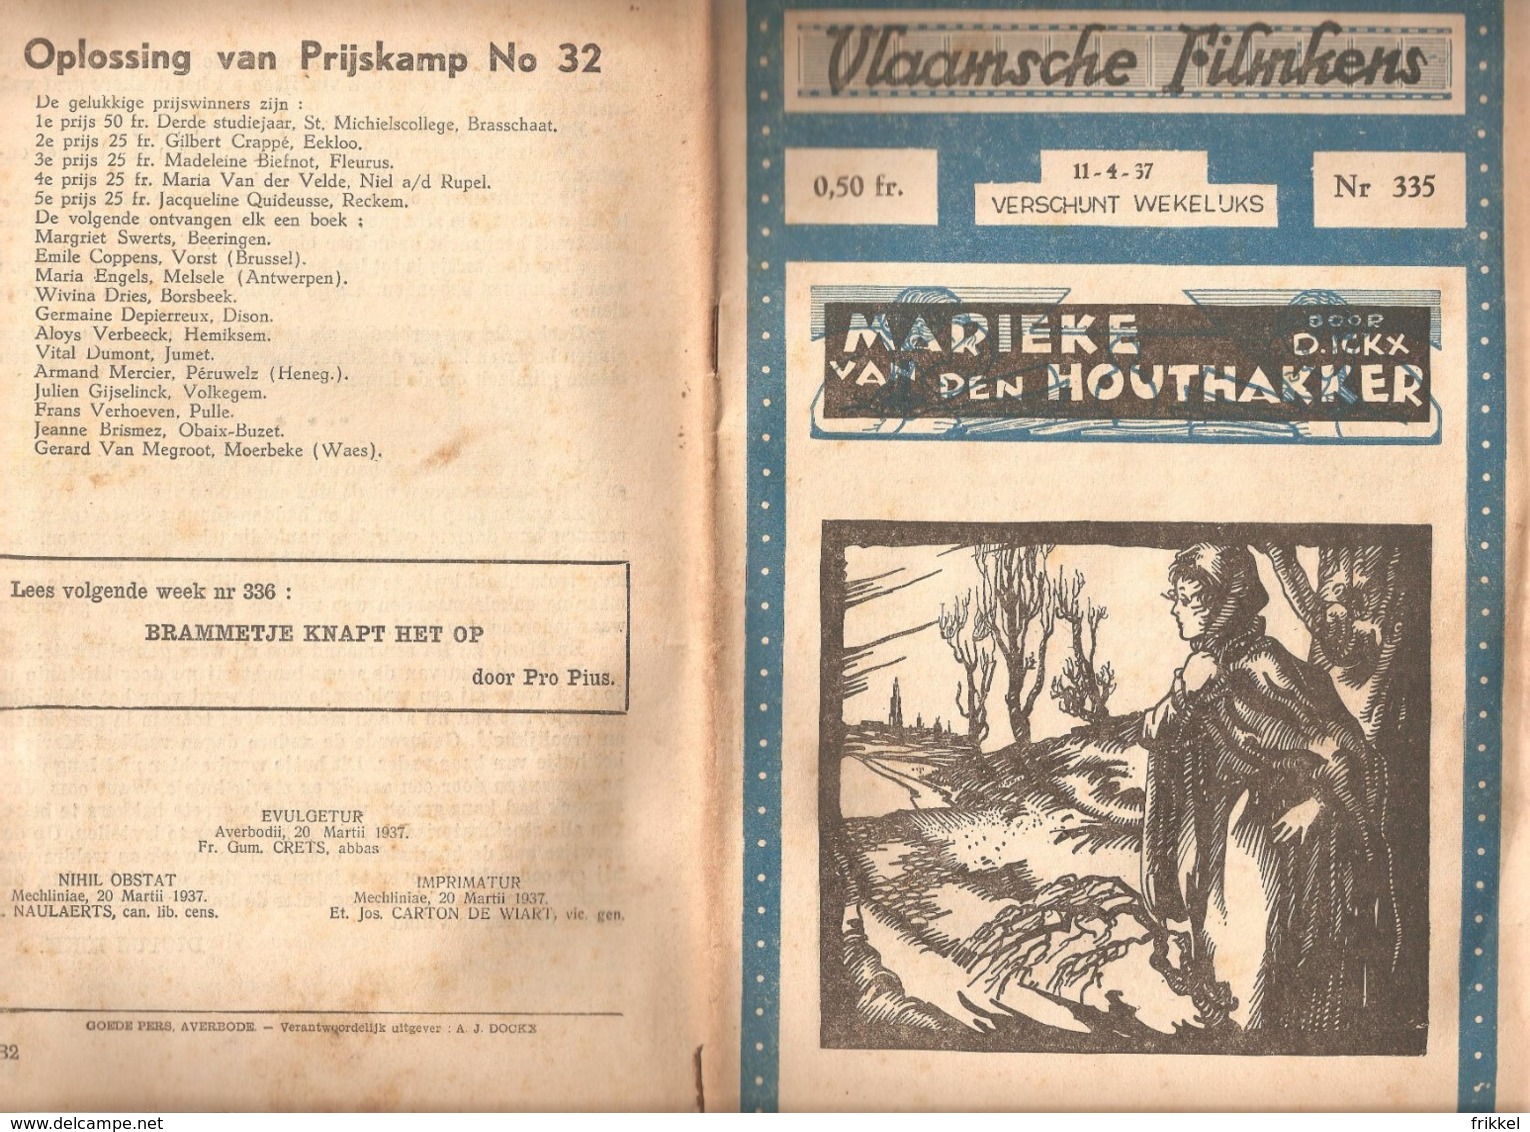 Vlaamsche Filmkens 335 Marieke Van Den Houthakker D Ickx 1937 GROOT FORMAAT: 16x23,5cm Averbode's Jeugbibliotheek - Antique